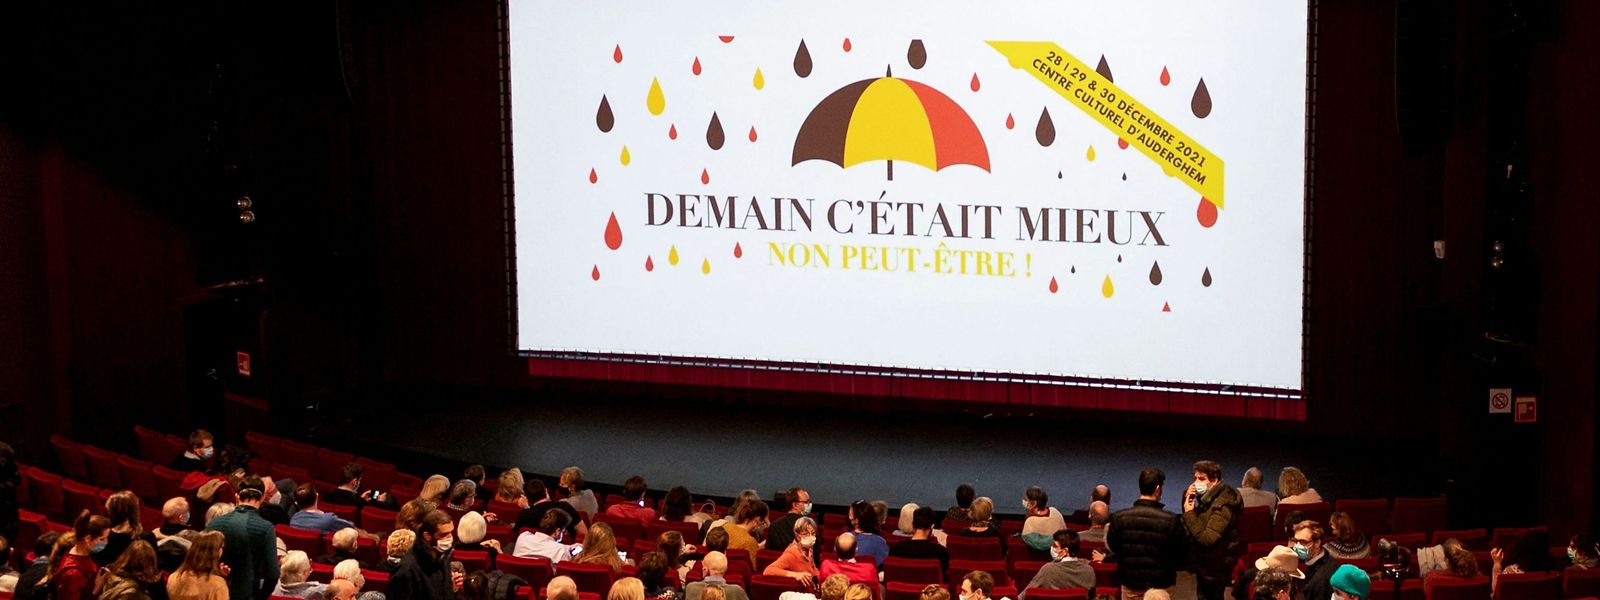 Les salles de spectacle et de cinéma belges ont pu rouvrir leurs portes, mercredi 29 décembre.